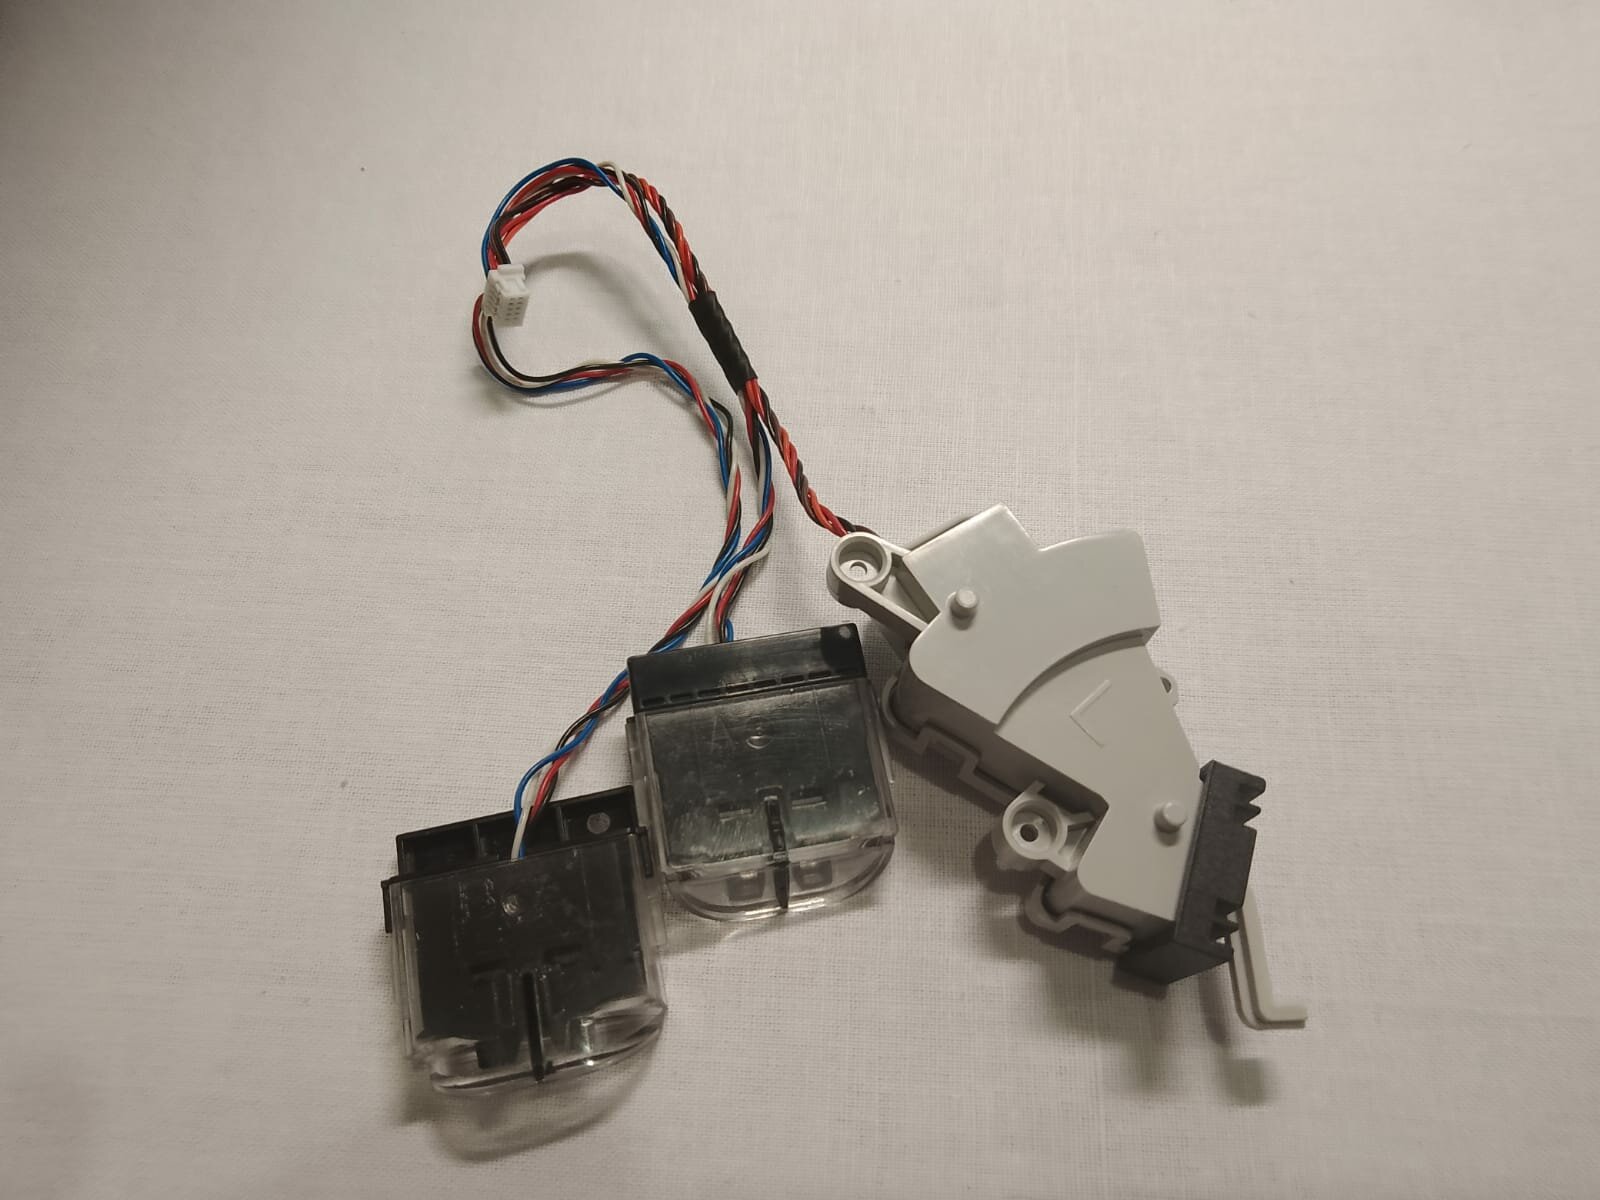 Механический датчик столкновения левый (L) + датчик высоты, падения для робота - пылесоса Roborock Robotic Vacuum Cleaner S502-00